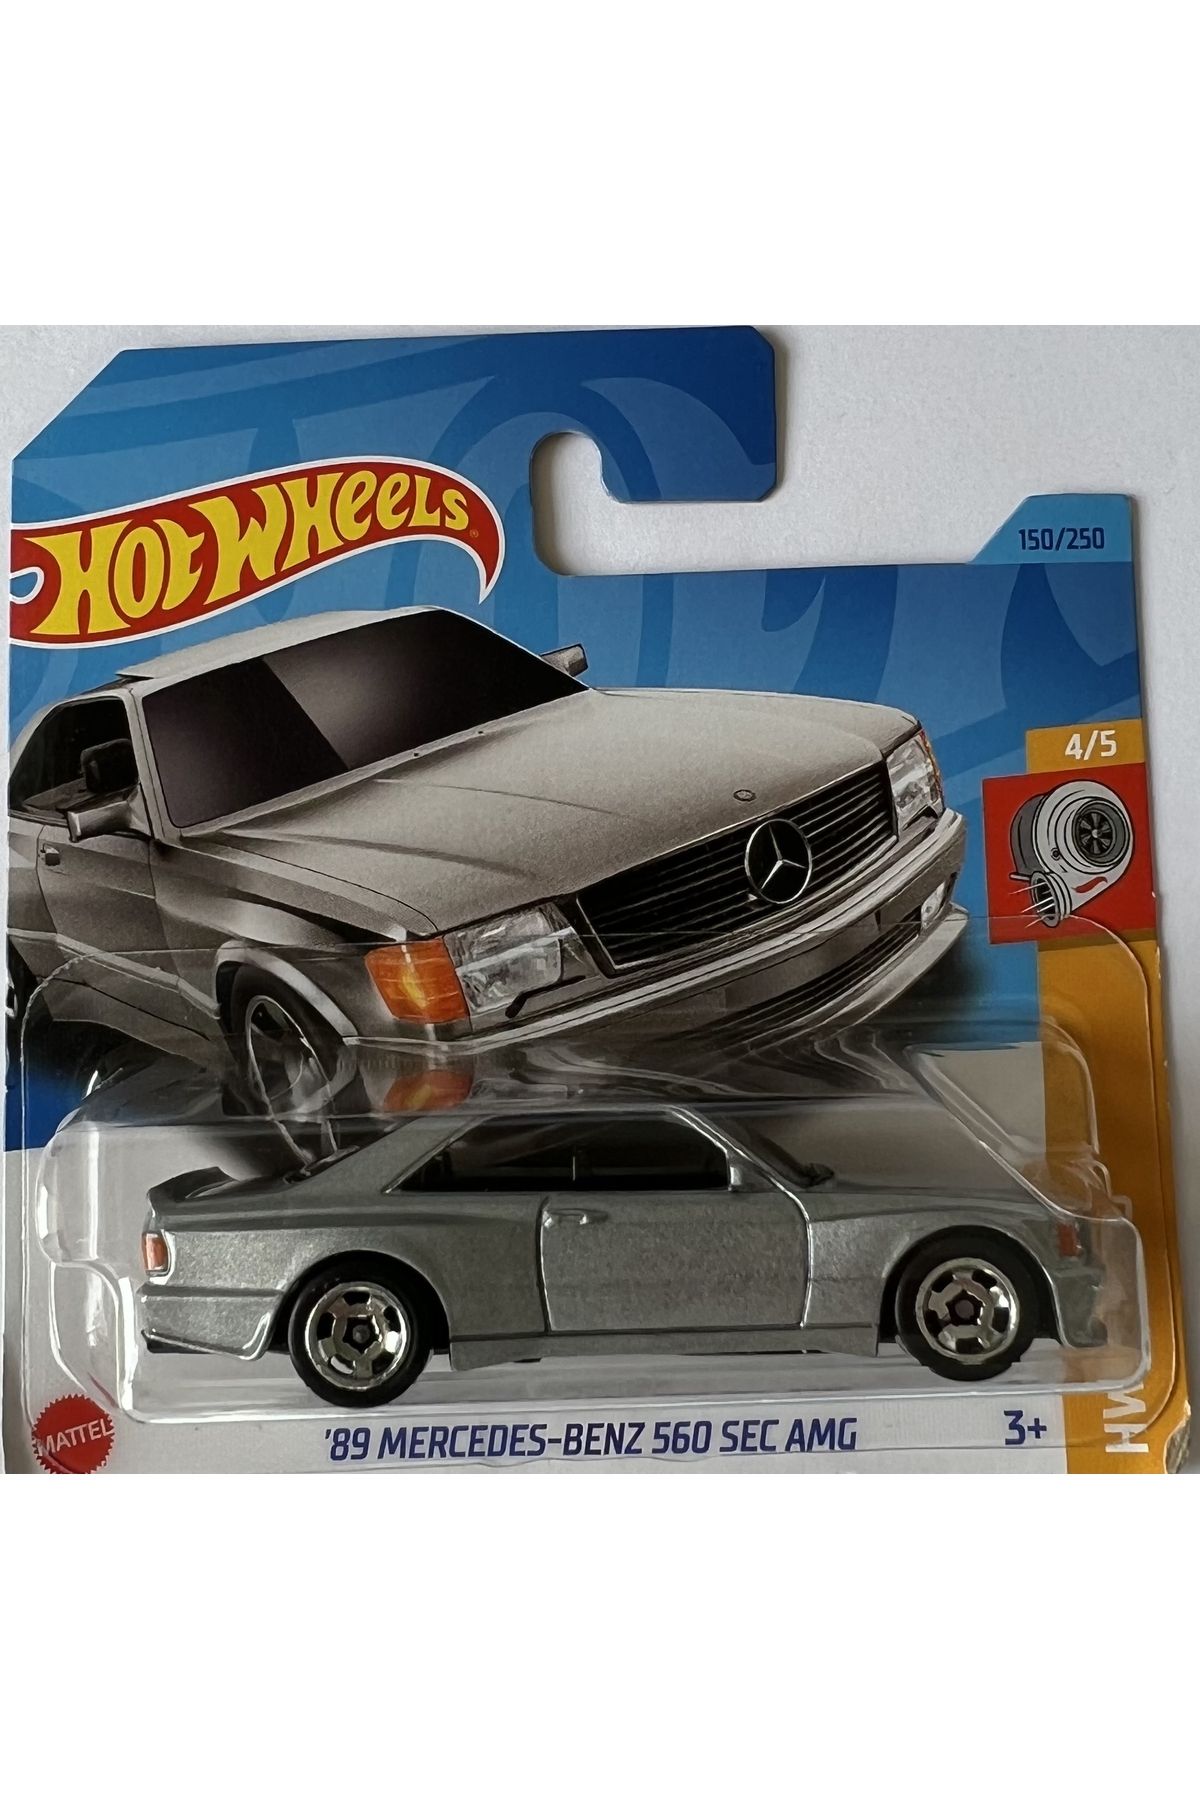 HOT WHEELS ‘89 Mercedes-Benz 560 Sec Amg